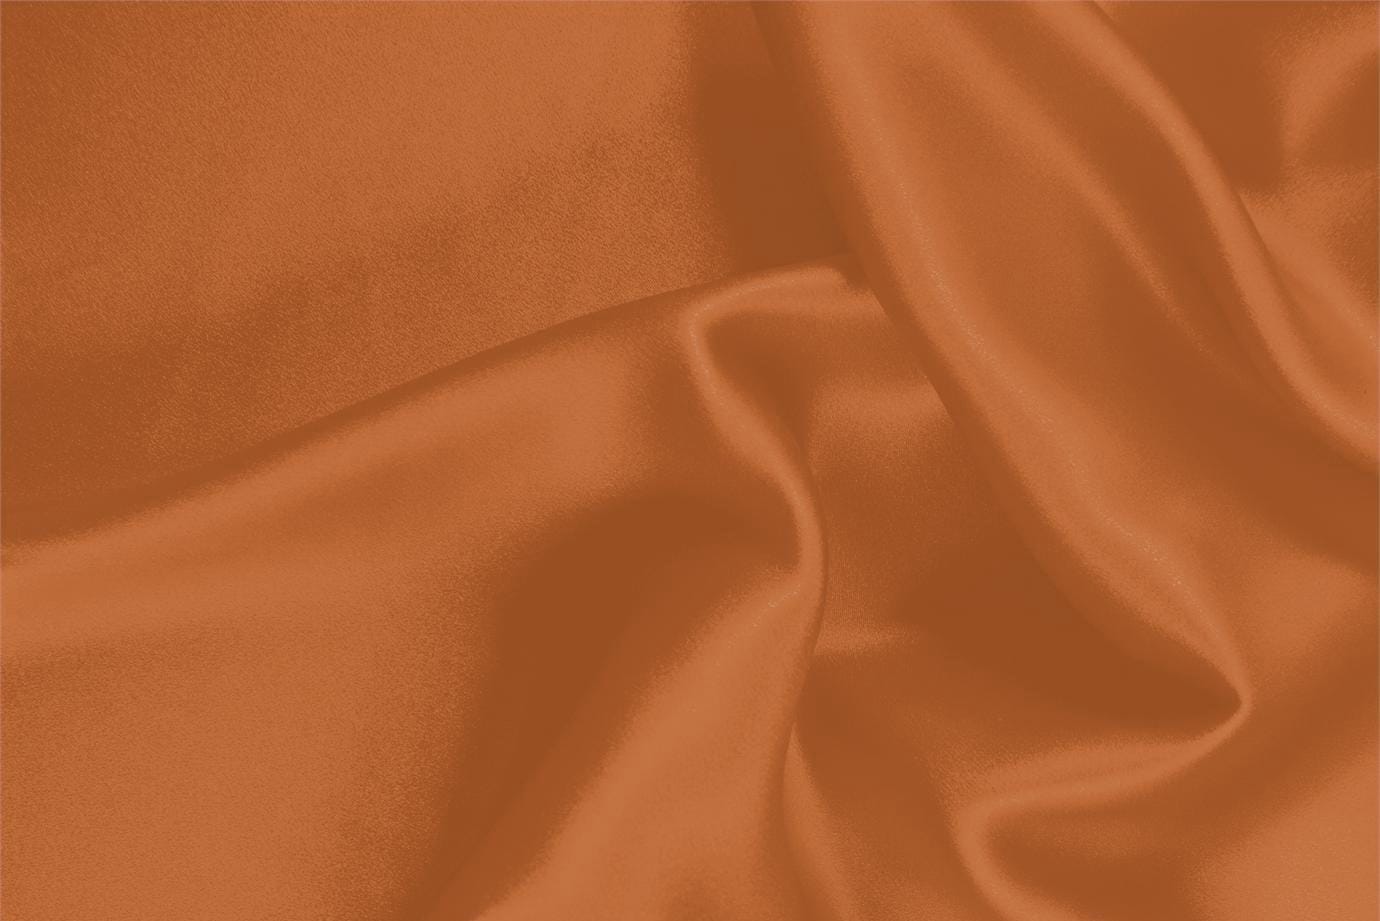 Tissu Crêpe Satin Orange caco en Soie pour vêtements